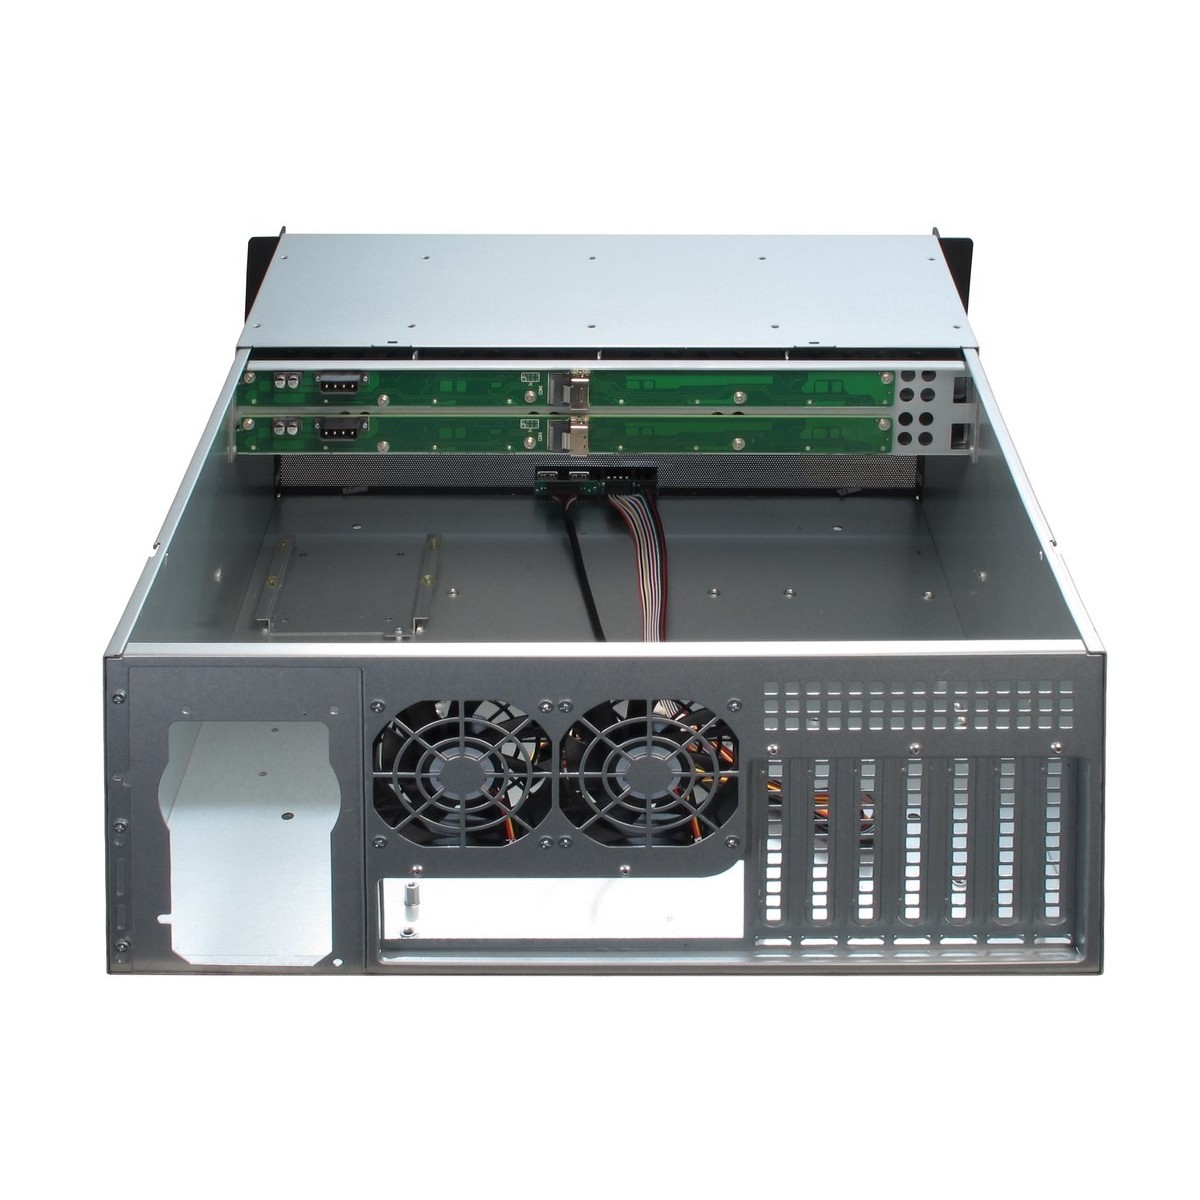 Inter-Tech 4U-4408 - Rack - Server - Black - Silver - ATX,EATX,EEB,Mini-ITX,uATX - Steel - 4U